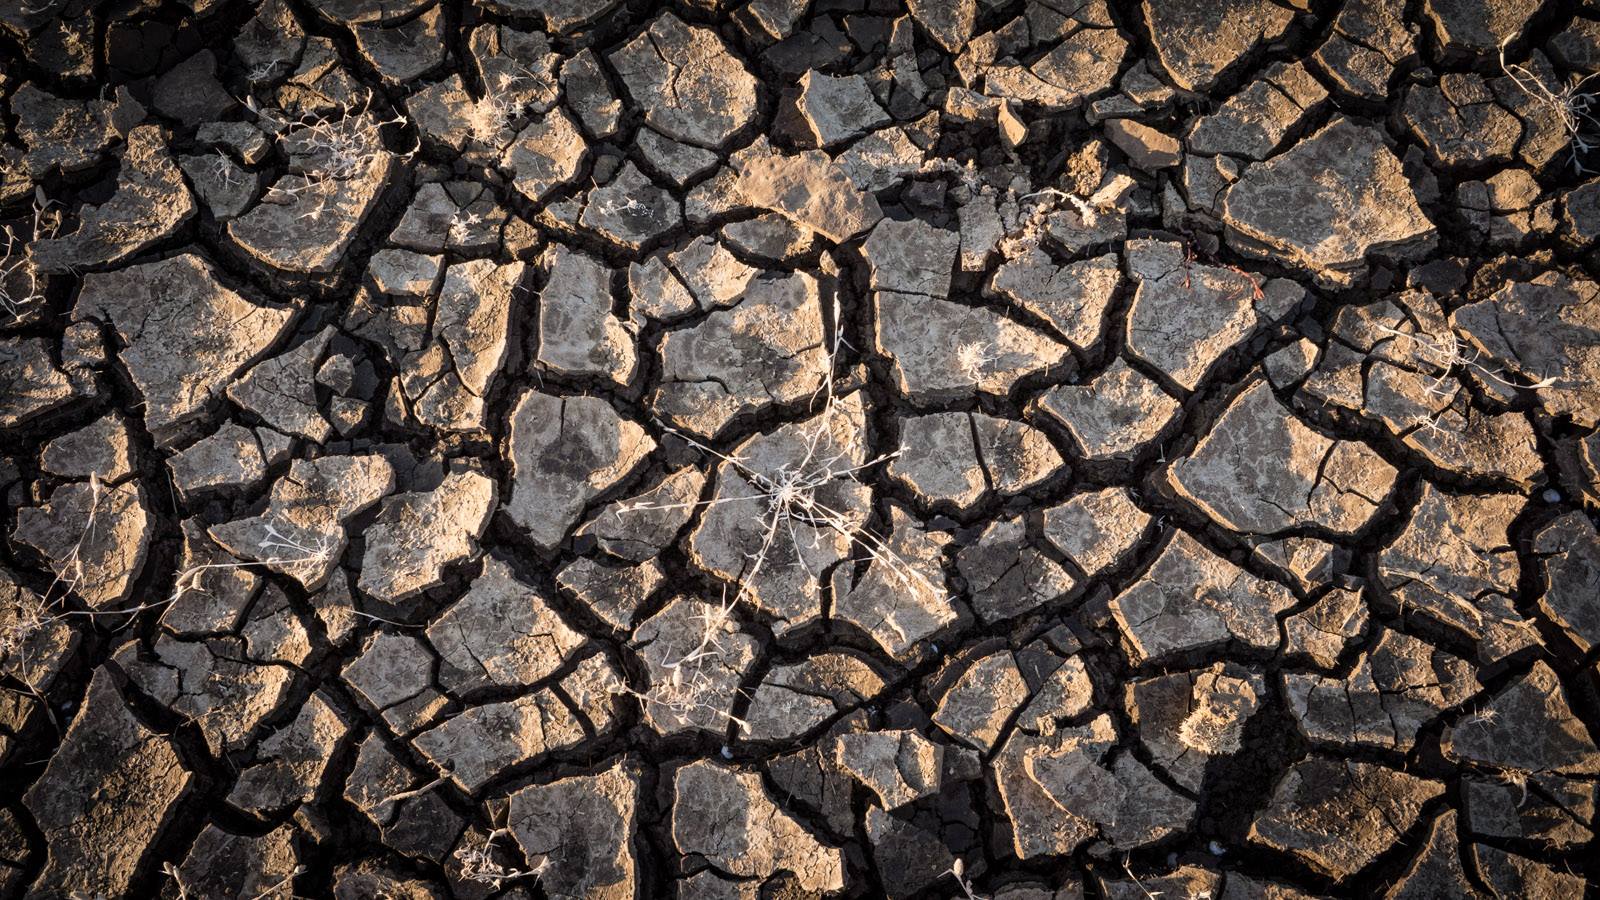 Cracked, dry soil in San Luis Reservoir, January 2014. Photo courtesy of Jason Liske.